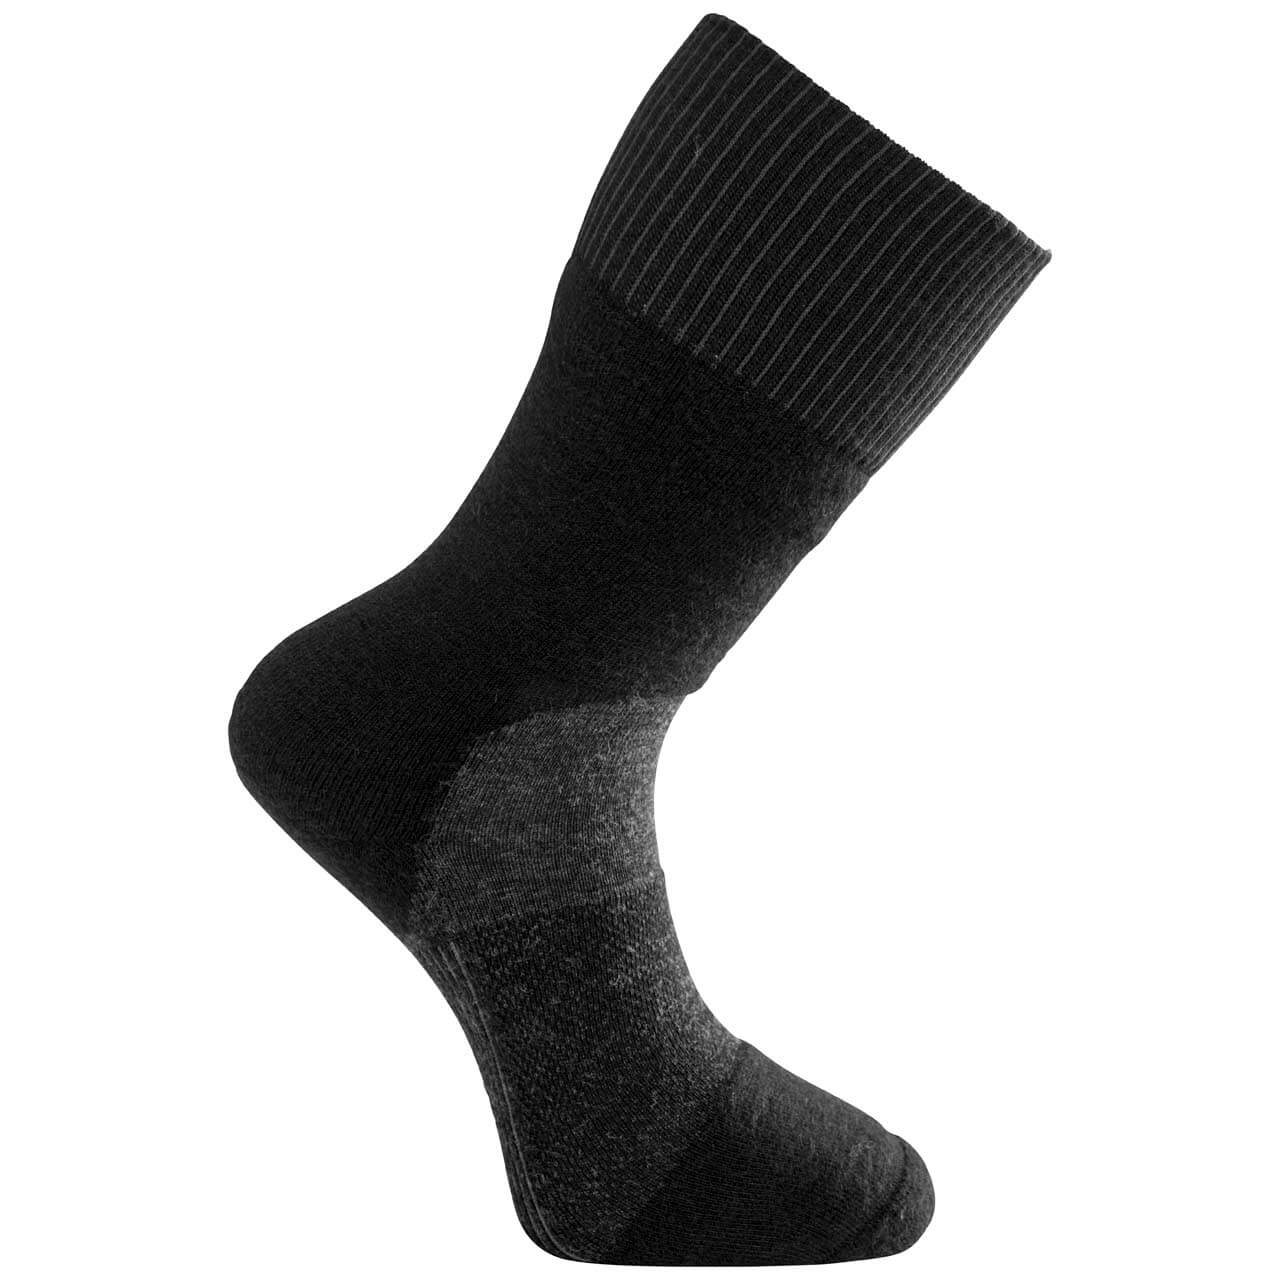 Woolpower Skilled Socken 400 - Black/Dark Grey, 40-44 von Woolpower